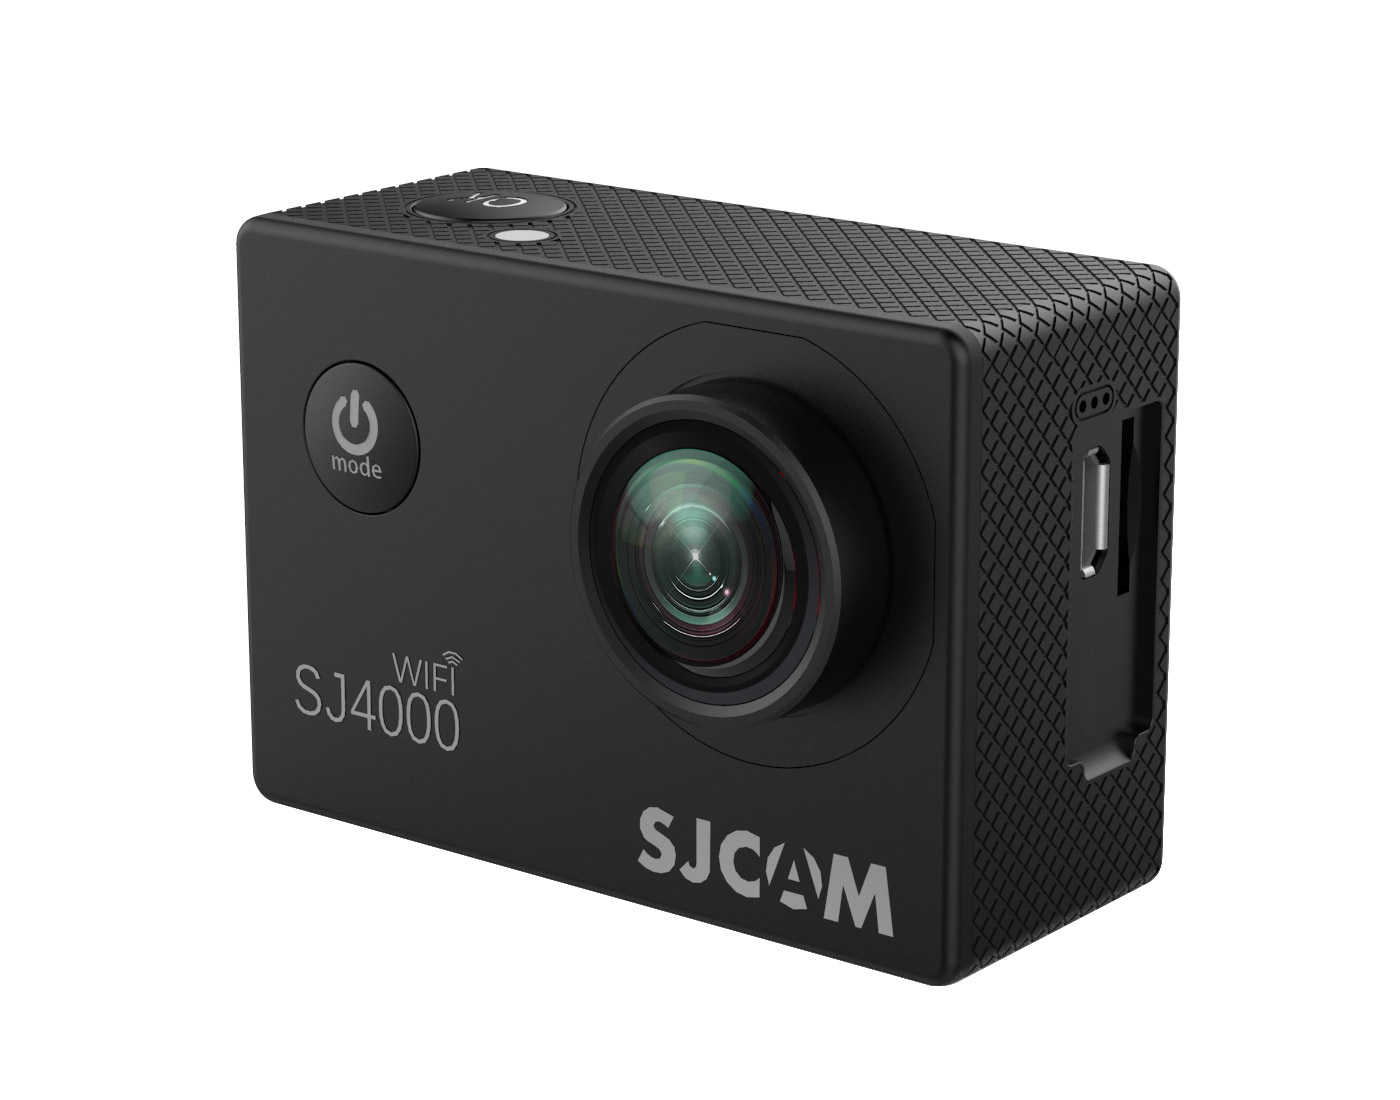 รูปภาพเพิ่มเติมเกี่ยวกับ SJCAM SJ4000 WiFi 2.0นิ้ว (Black) กล้อง action camera กล้องแอคชั่นแคม กล้องแอคชั่น action cam กล้องแอคชั่น camera